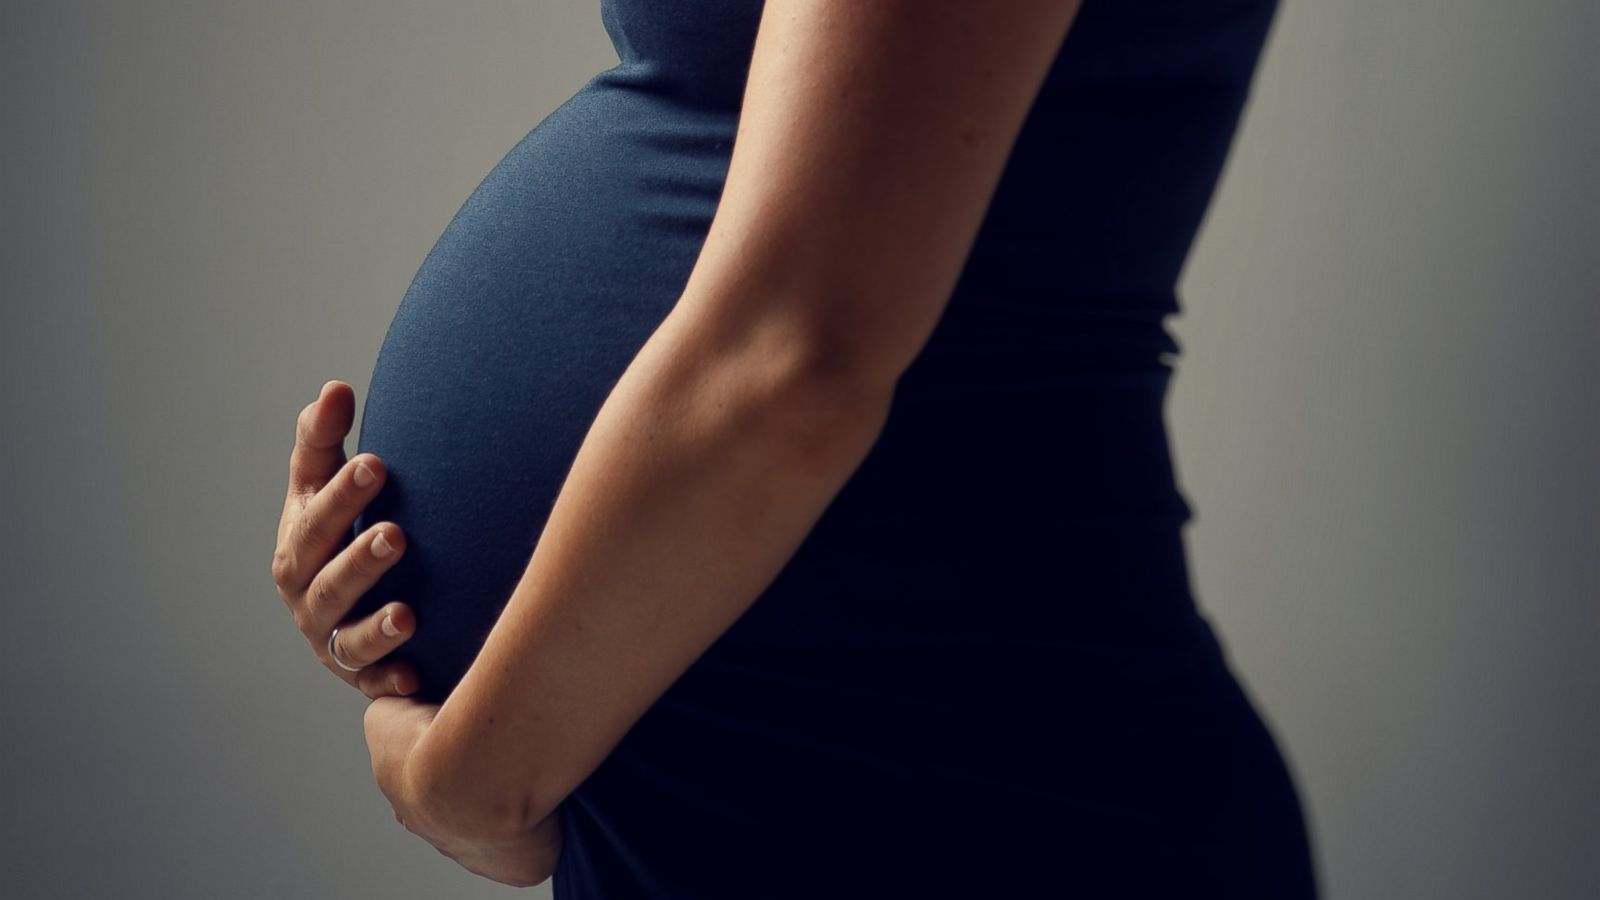 نصائح للحامل لتصوم بأمان